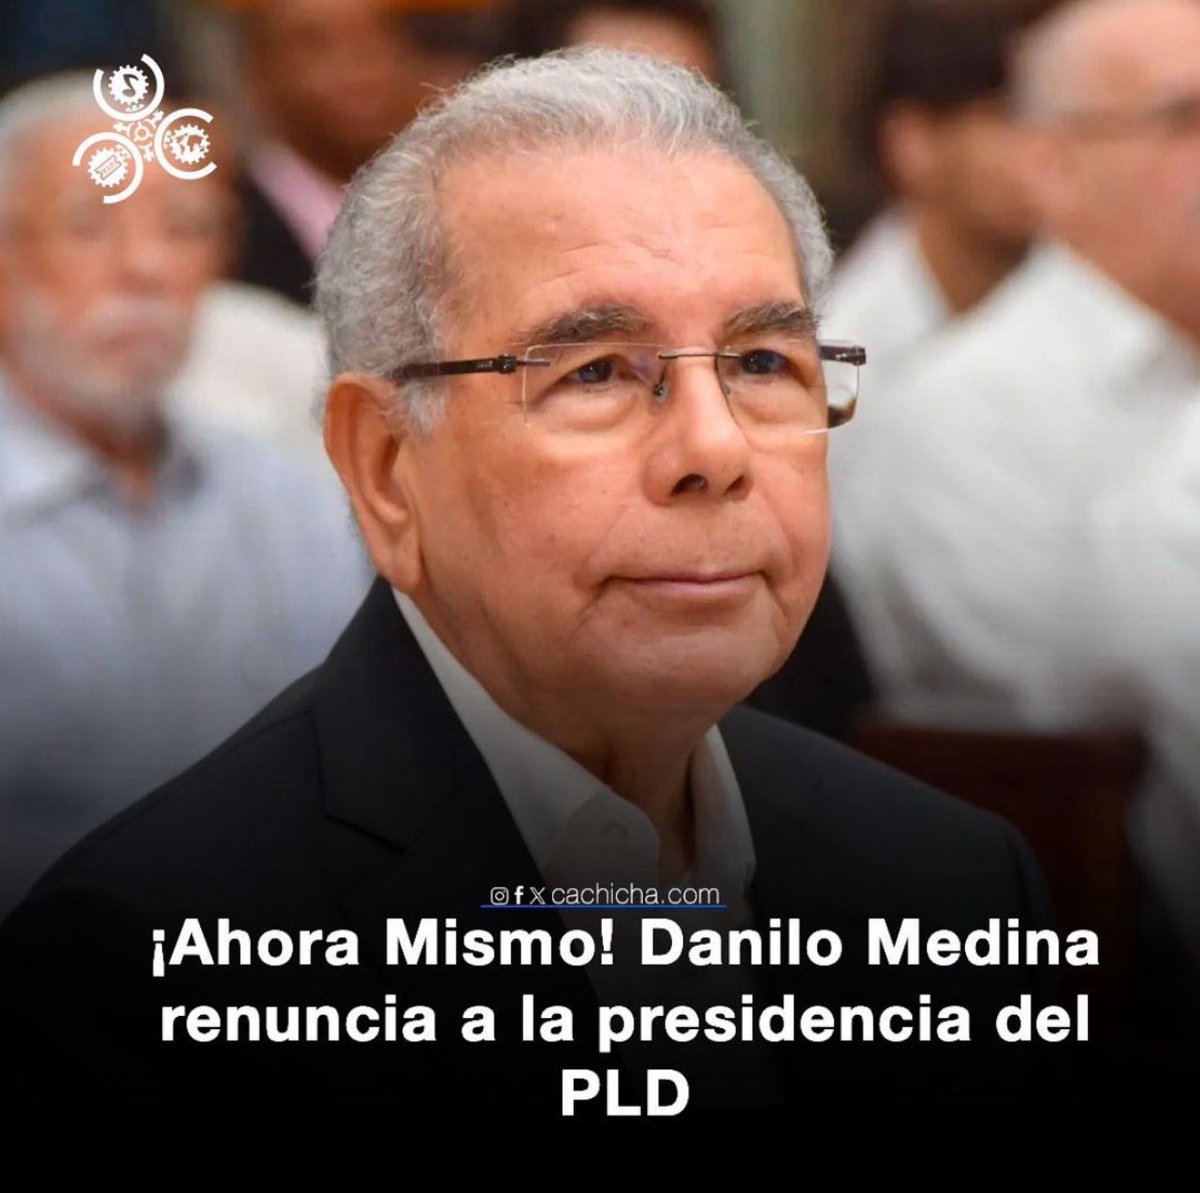 Dicen que ahora mismo Danilo Medina renuncia a la presidencia del @PLDenlinea .

Mi estimado @DaniloMedina es un hombre visionario y de buen corazón.

 ¿Qué dice el pueblo?